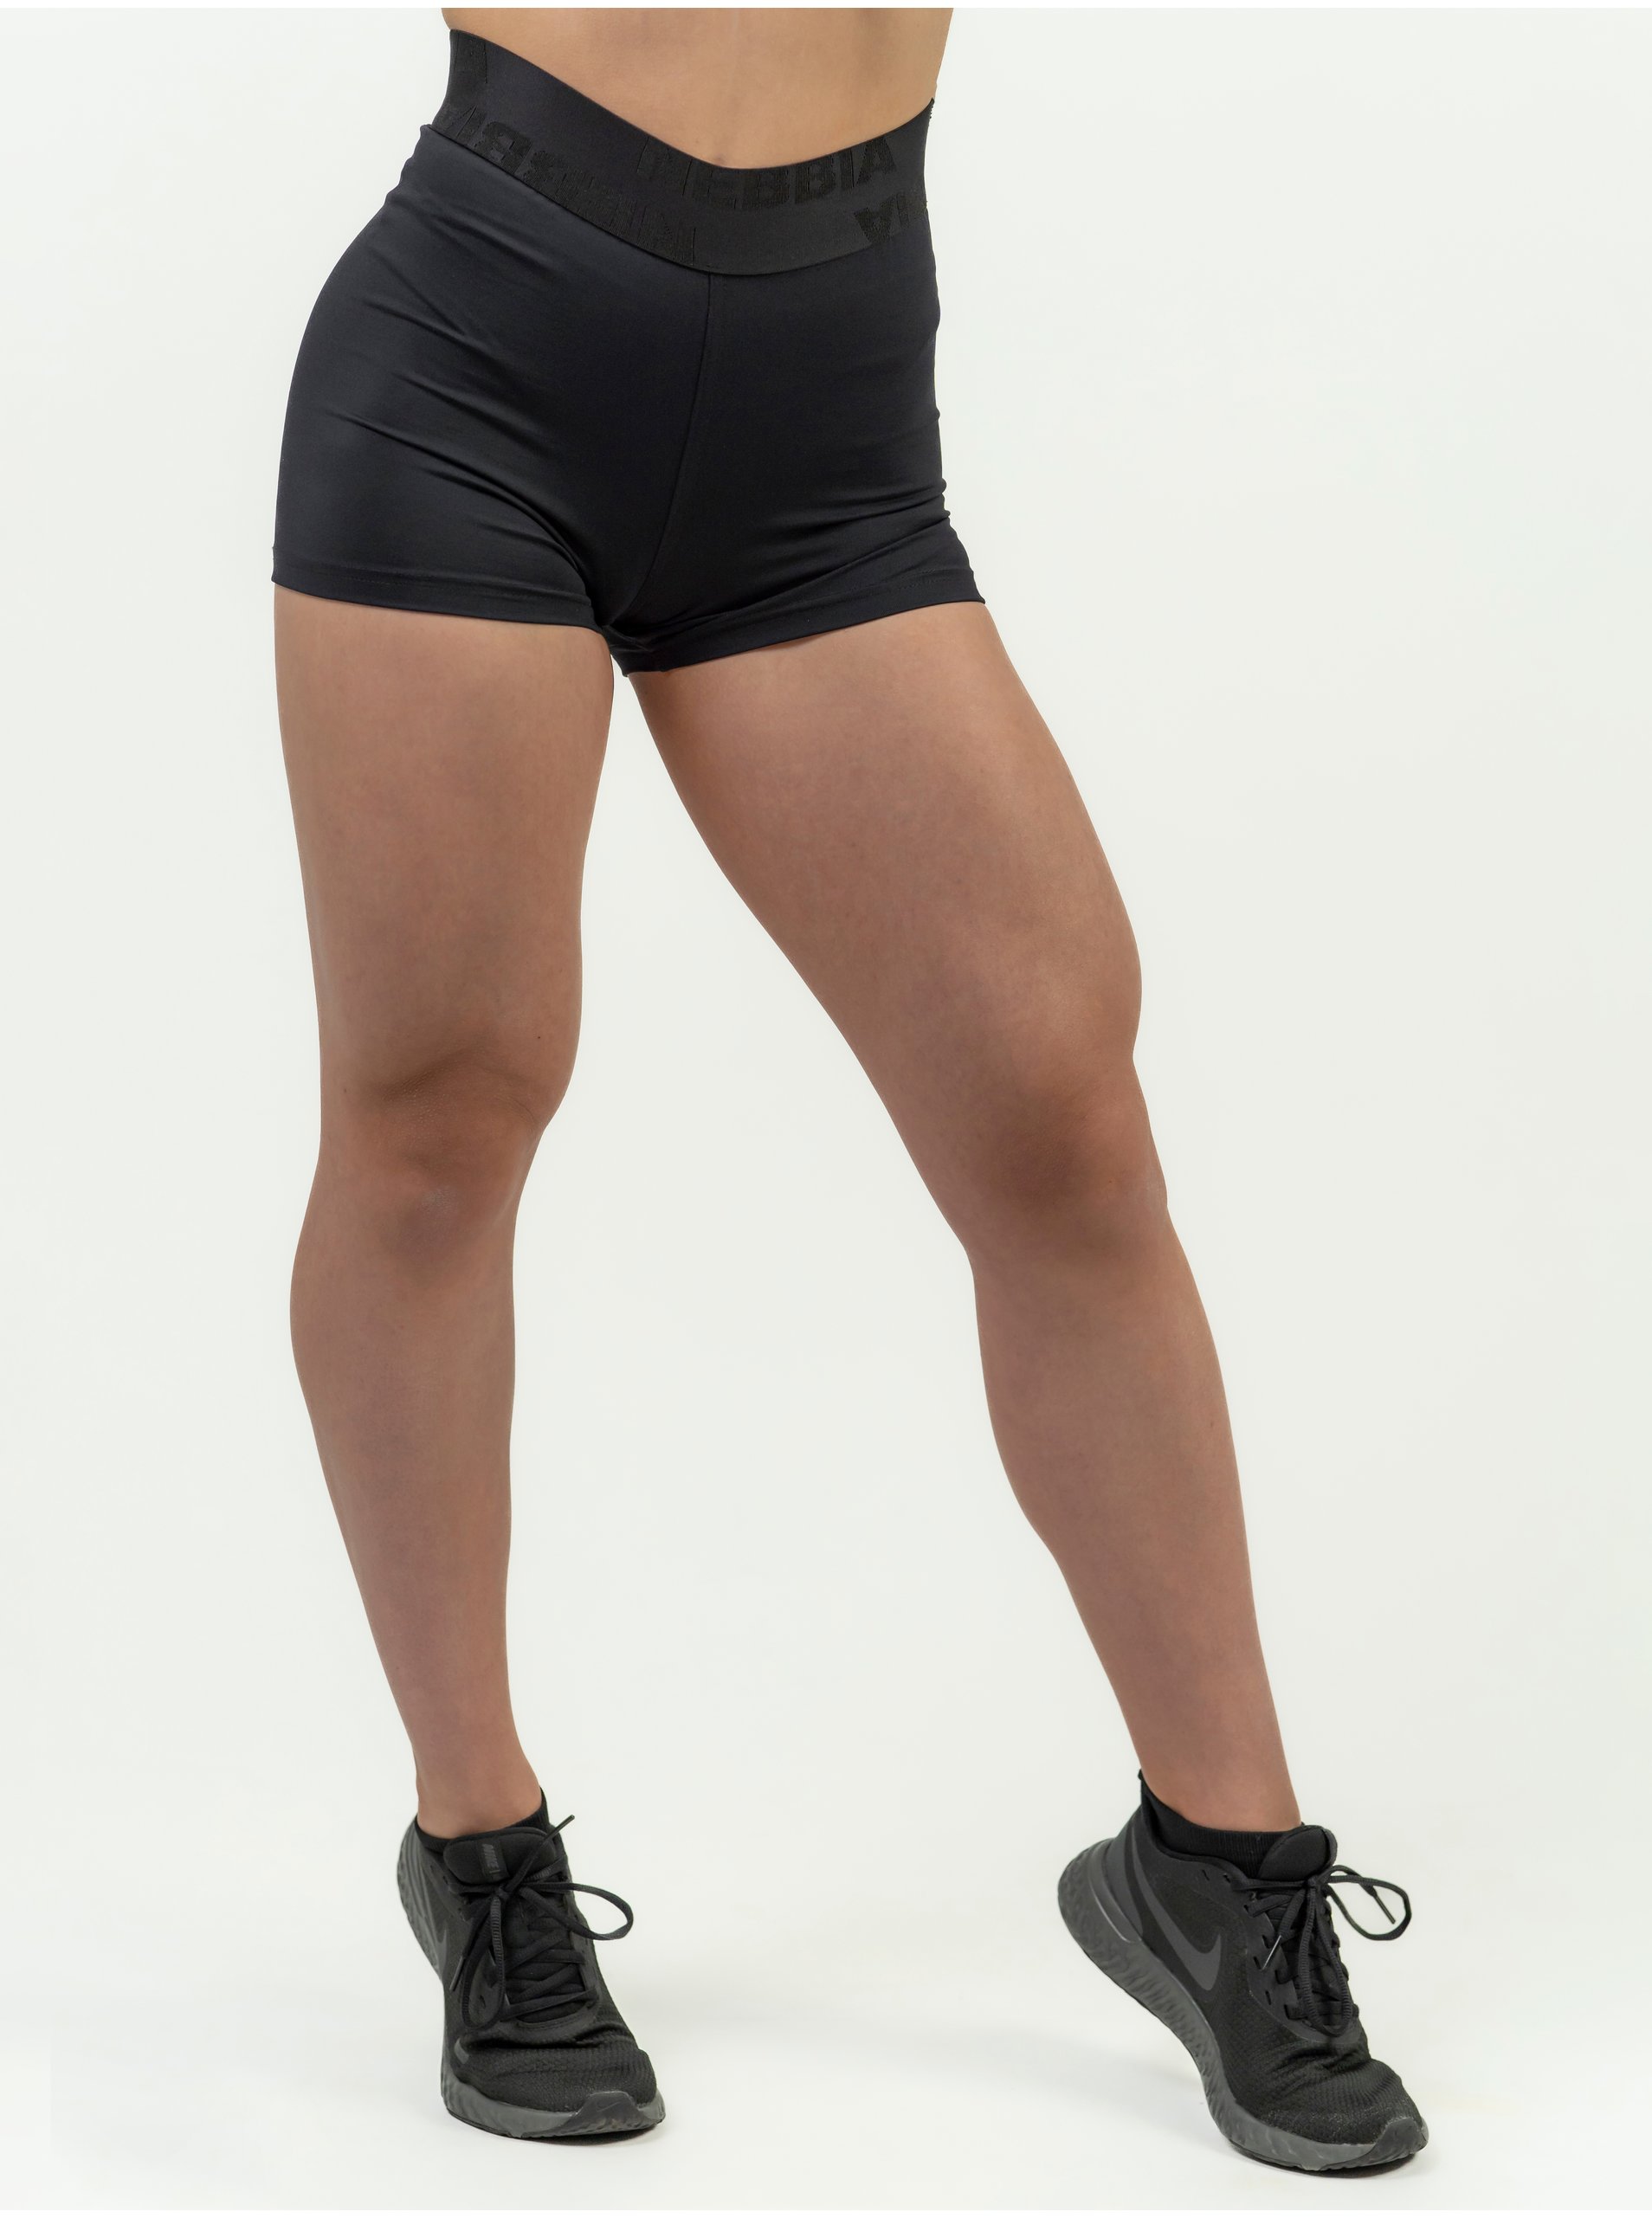 Lacno Čierne dámske športové kompresné kraťasy NEBBIA Intense Leg Day